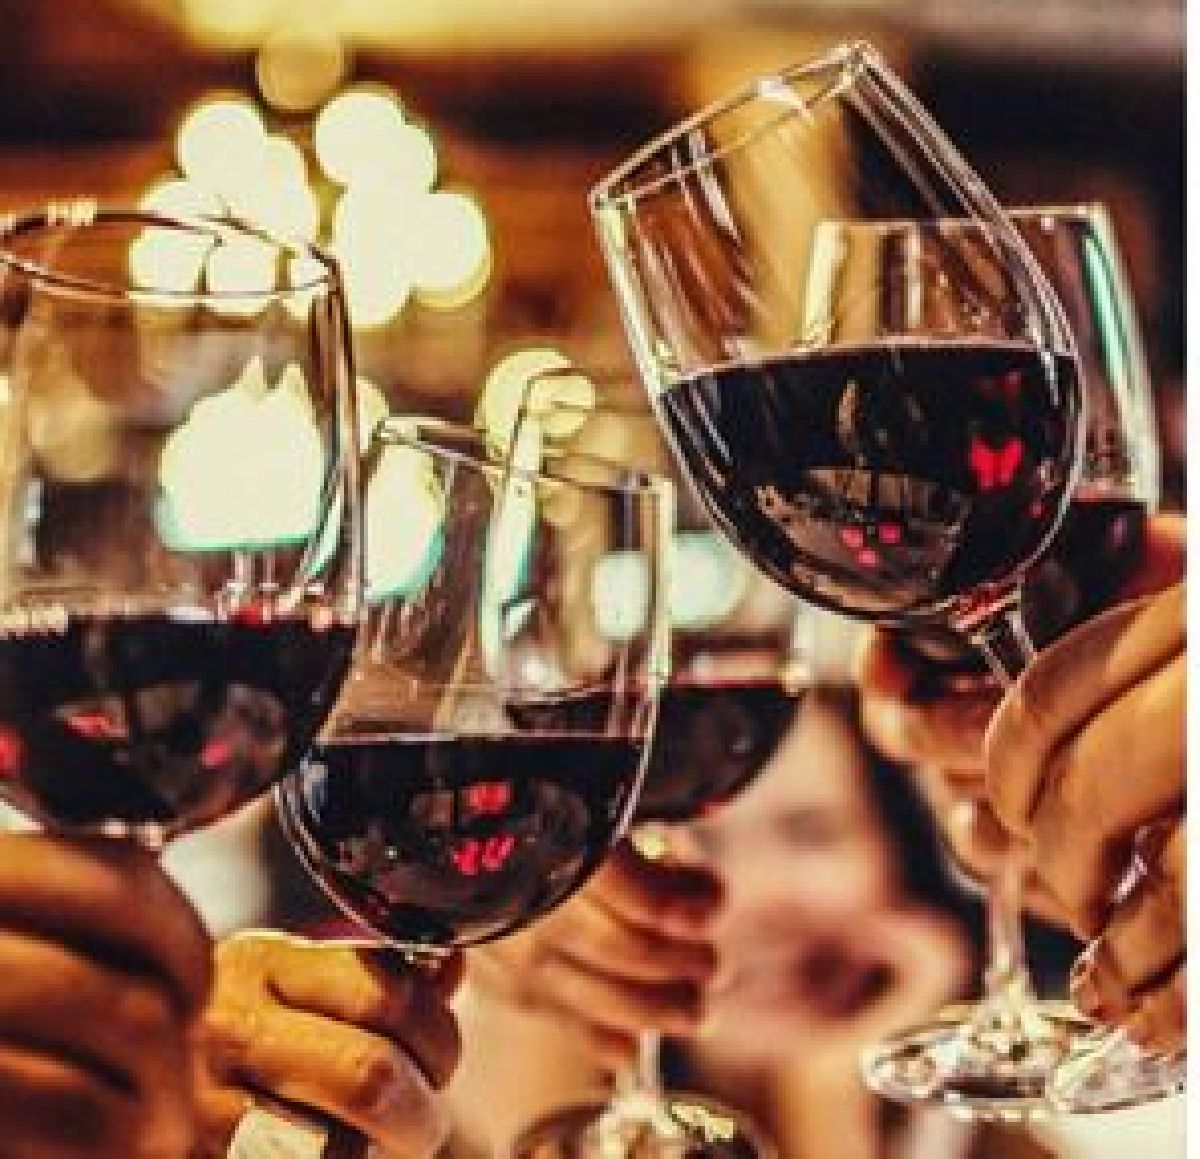 Grand Hyatt São Paulo e Rio de Janeiro promovem Hyatt Wine Club dedicado aos vinhos brasileiros